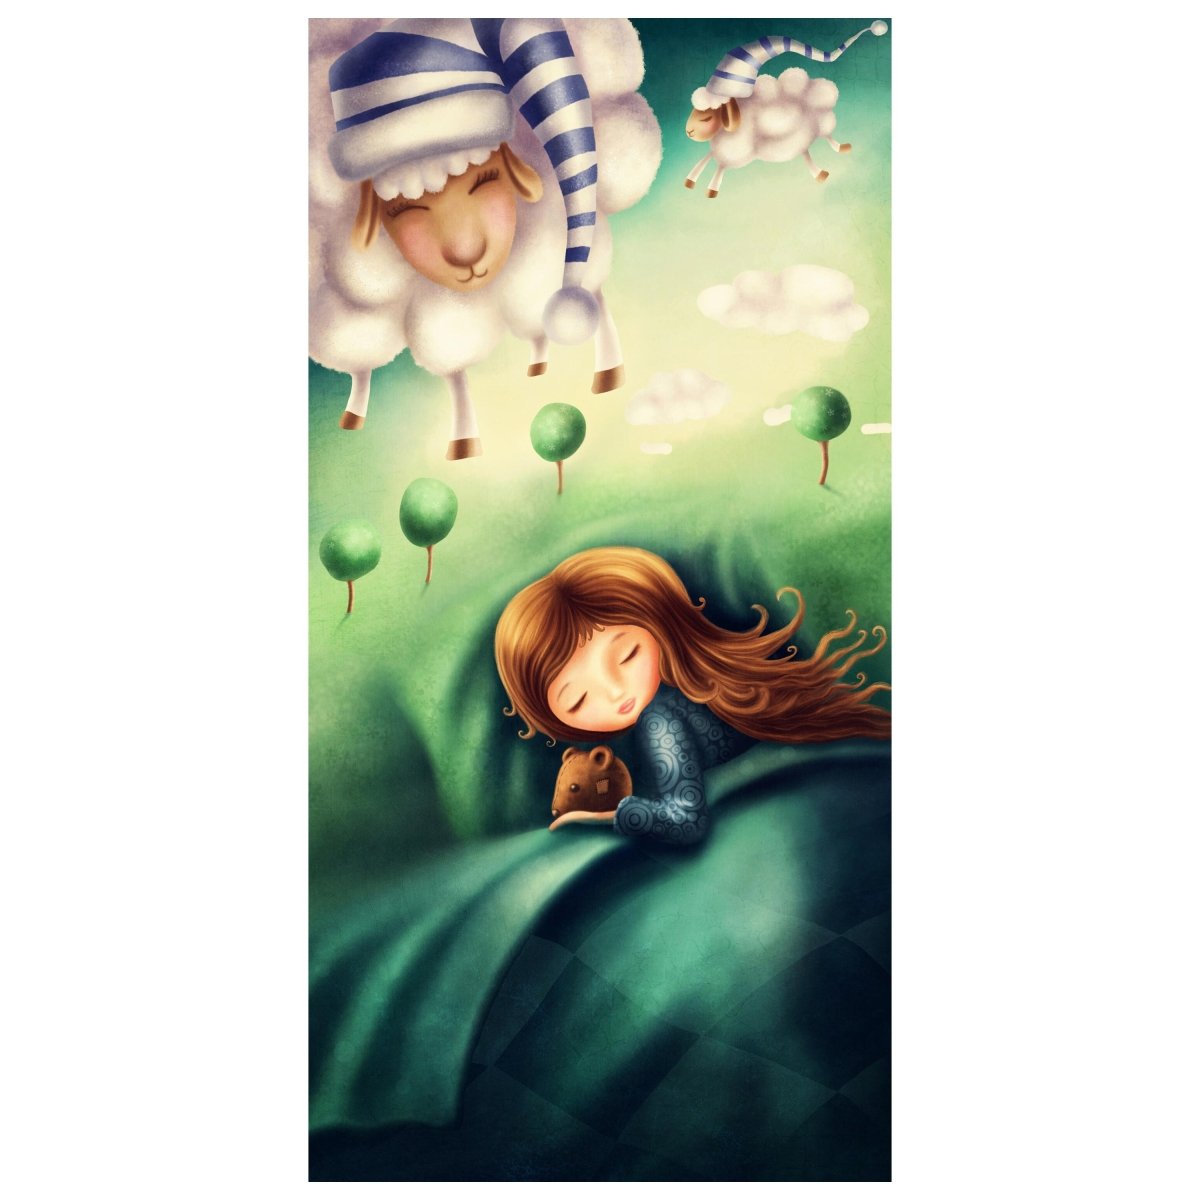 Türtapete schlafendes Kind, Schafe, Träumen, Baum M1255 - Bild 2